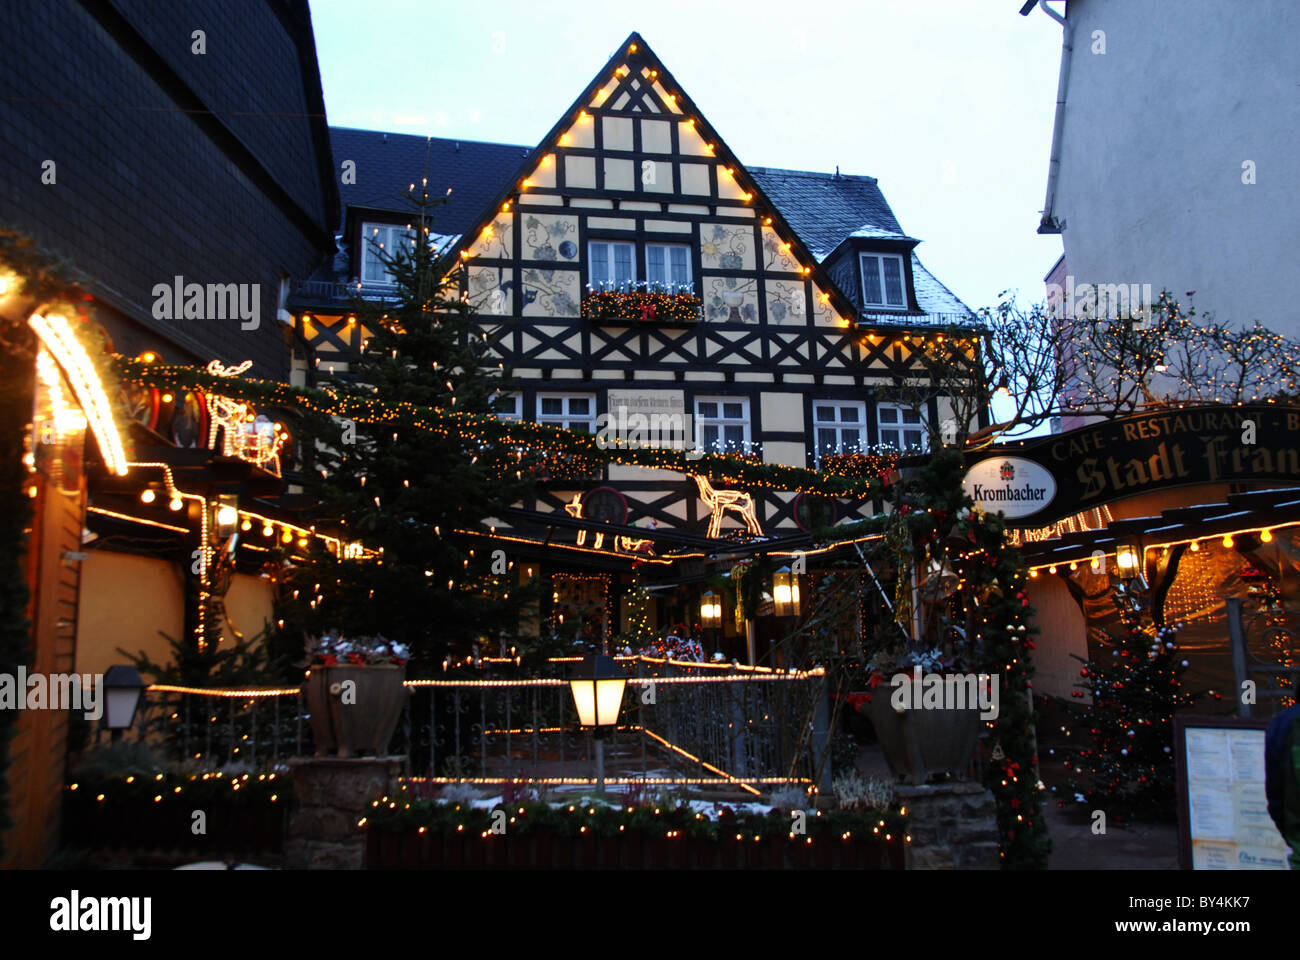 Rüdesheim at Christmas, Germany Stock Photo